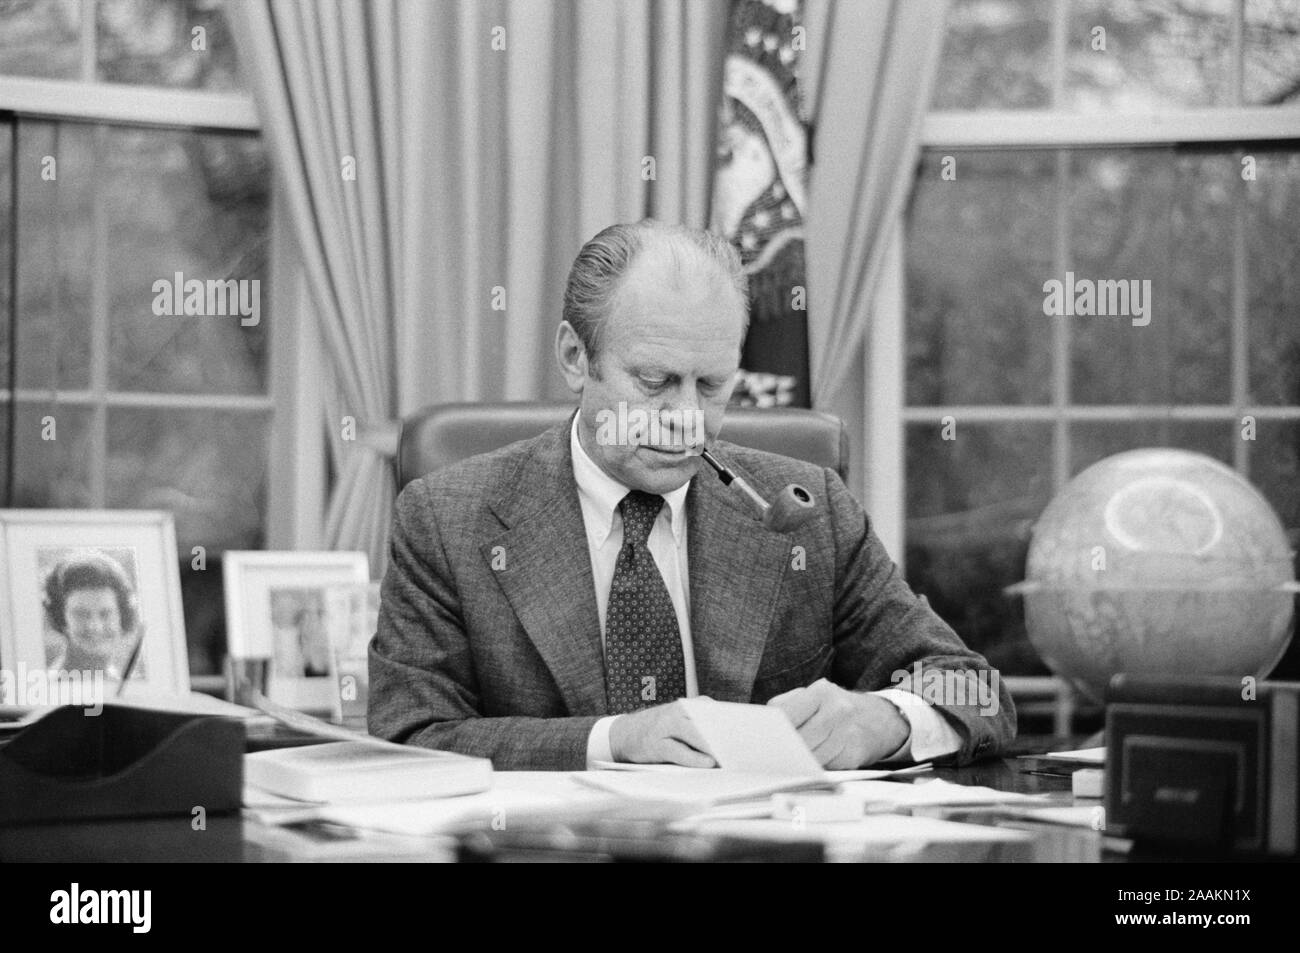 Us-Präsident Gerald Ford arbeitet an seinem Schreibtisch, das Rauchen einer Pfeife, White House, Washington, D.C., USA, Foto: Marion S. Trikosko, 6. Februar 1975 Stockfoto